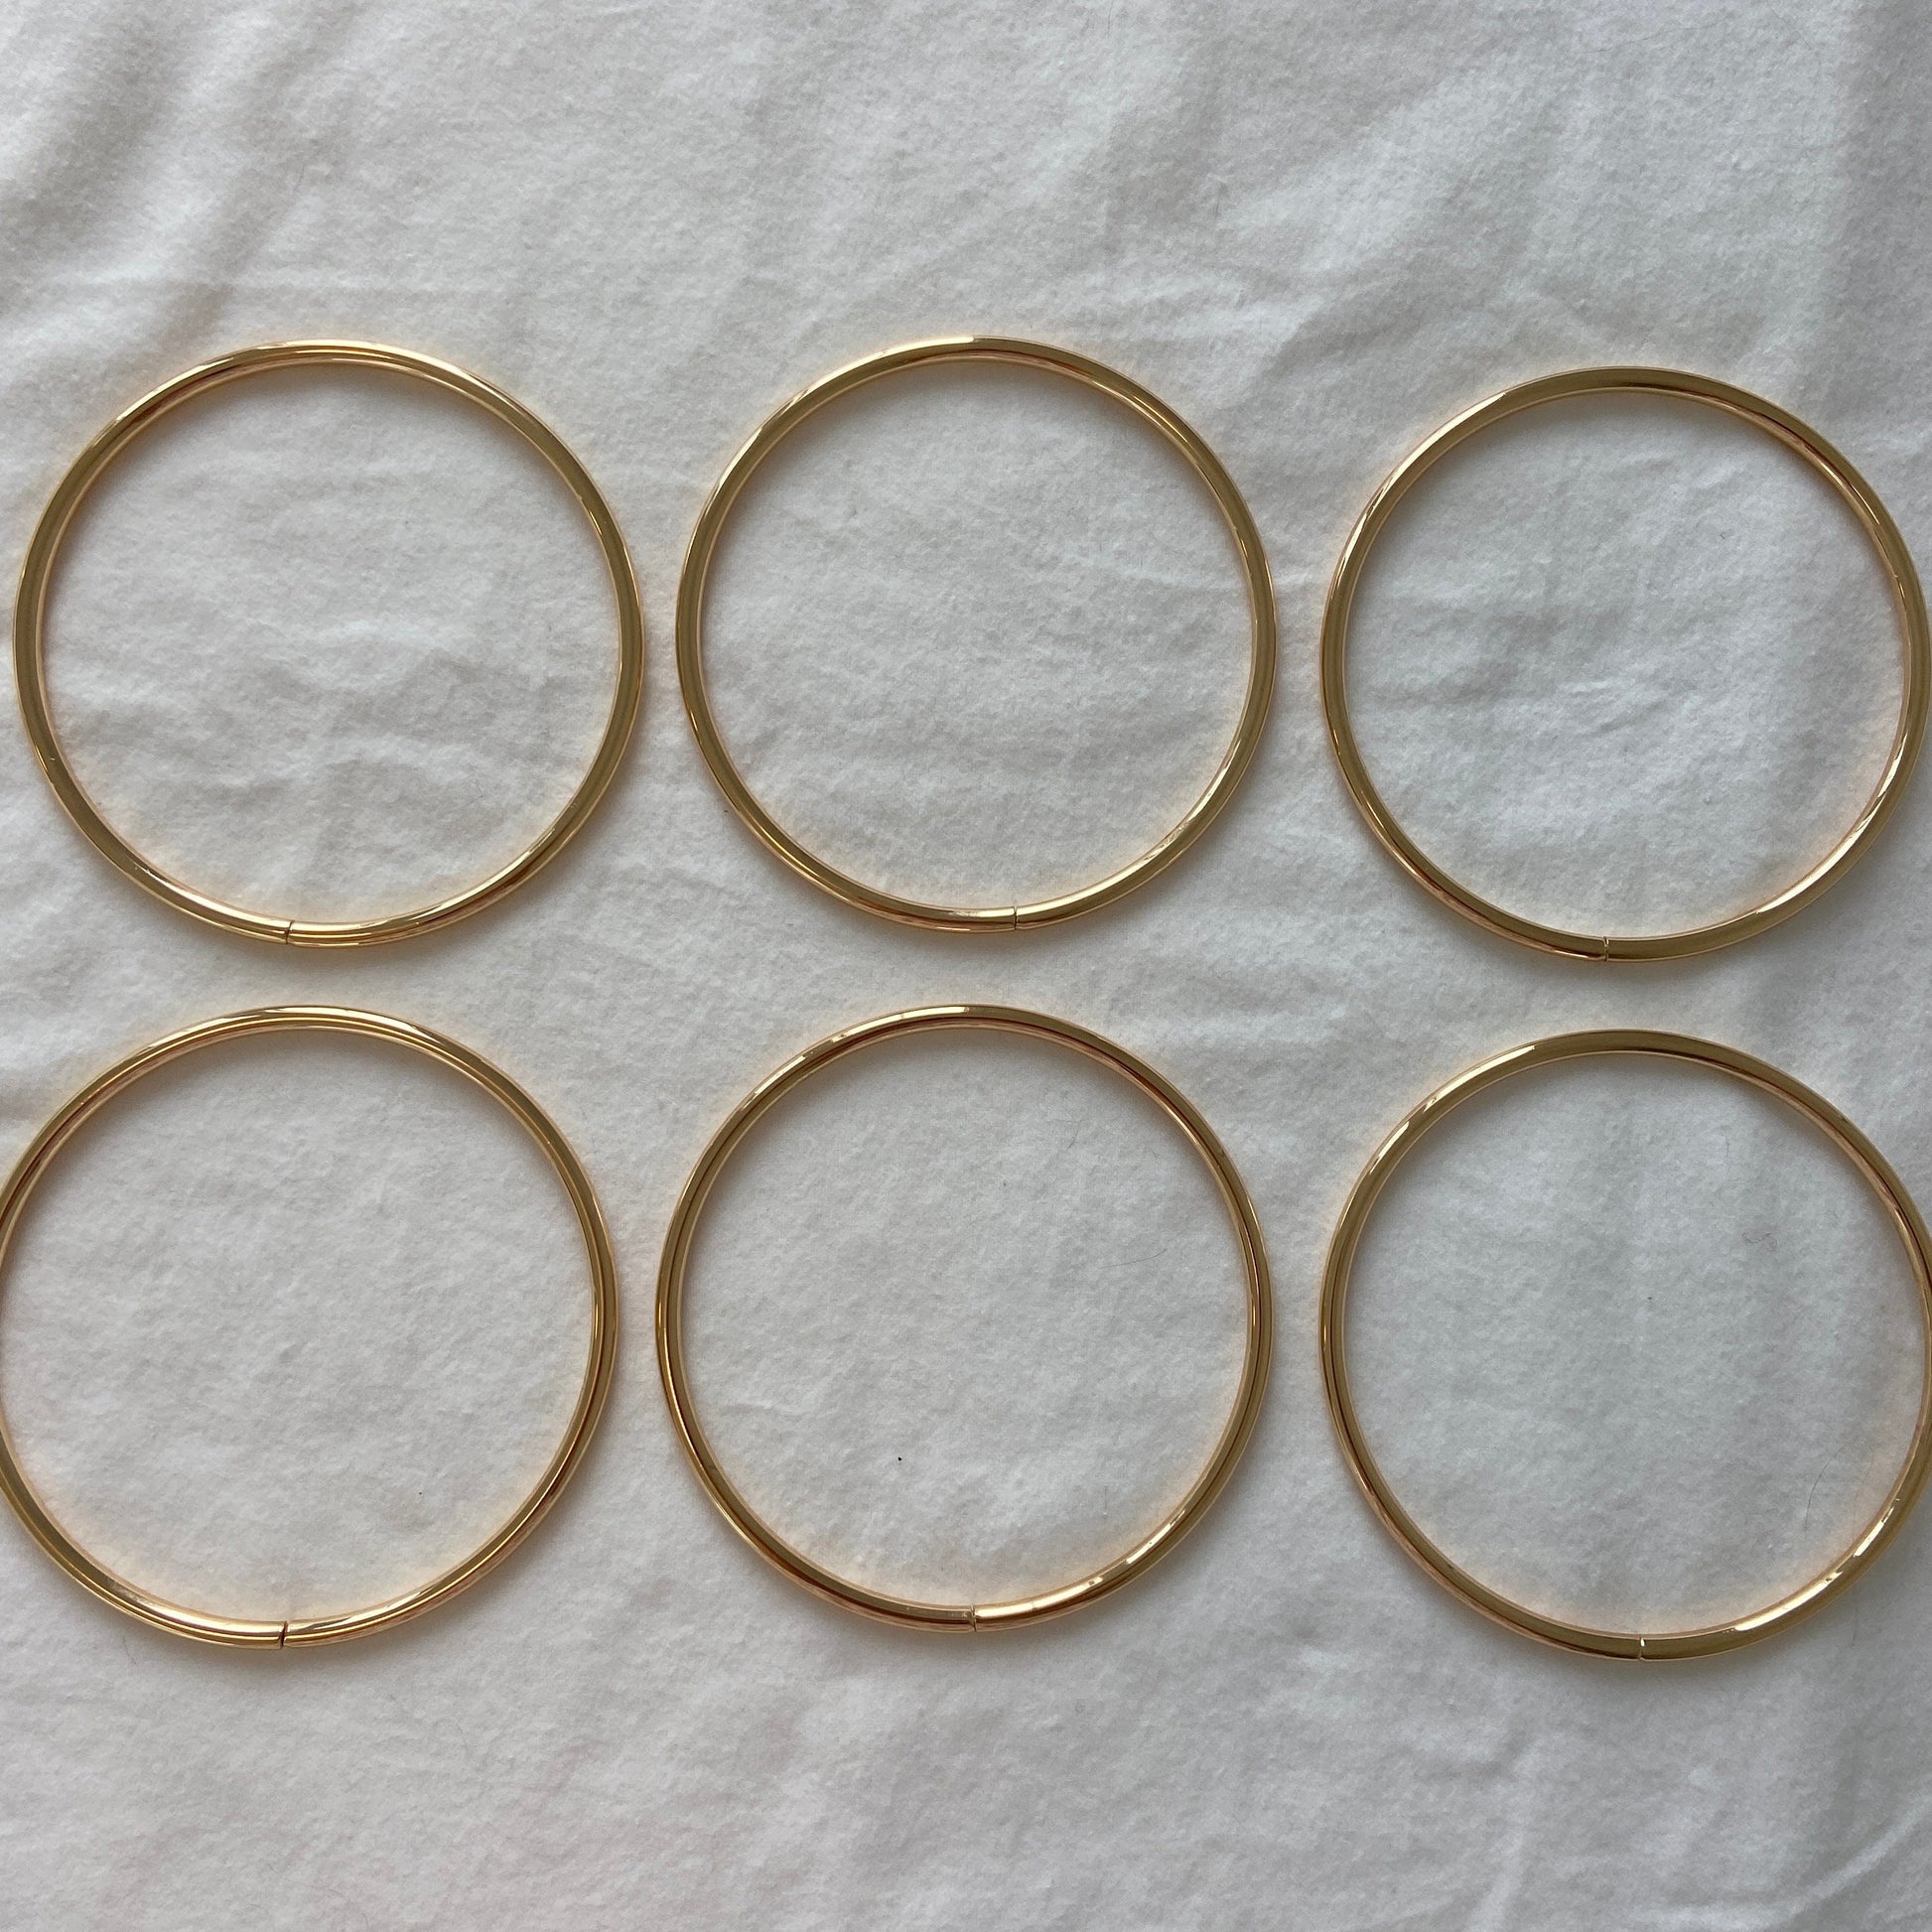 Flora Street Atelier Bag Hardware Metal Ring Bag Handles 6pcs (Gold) | DIY Bag Hardware